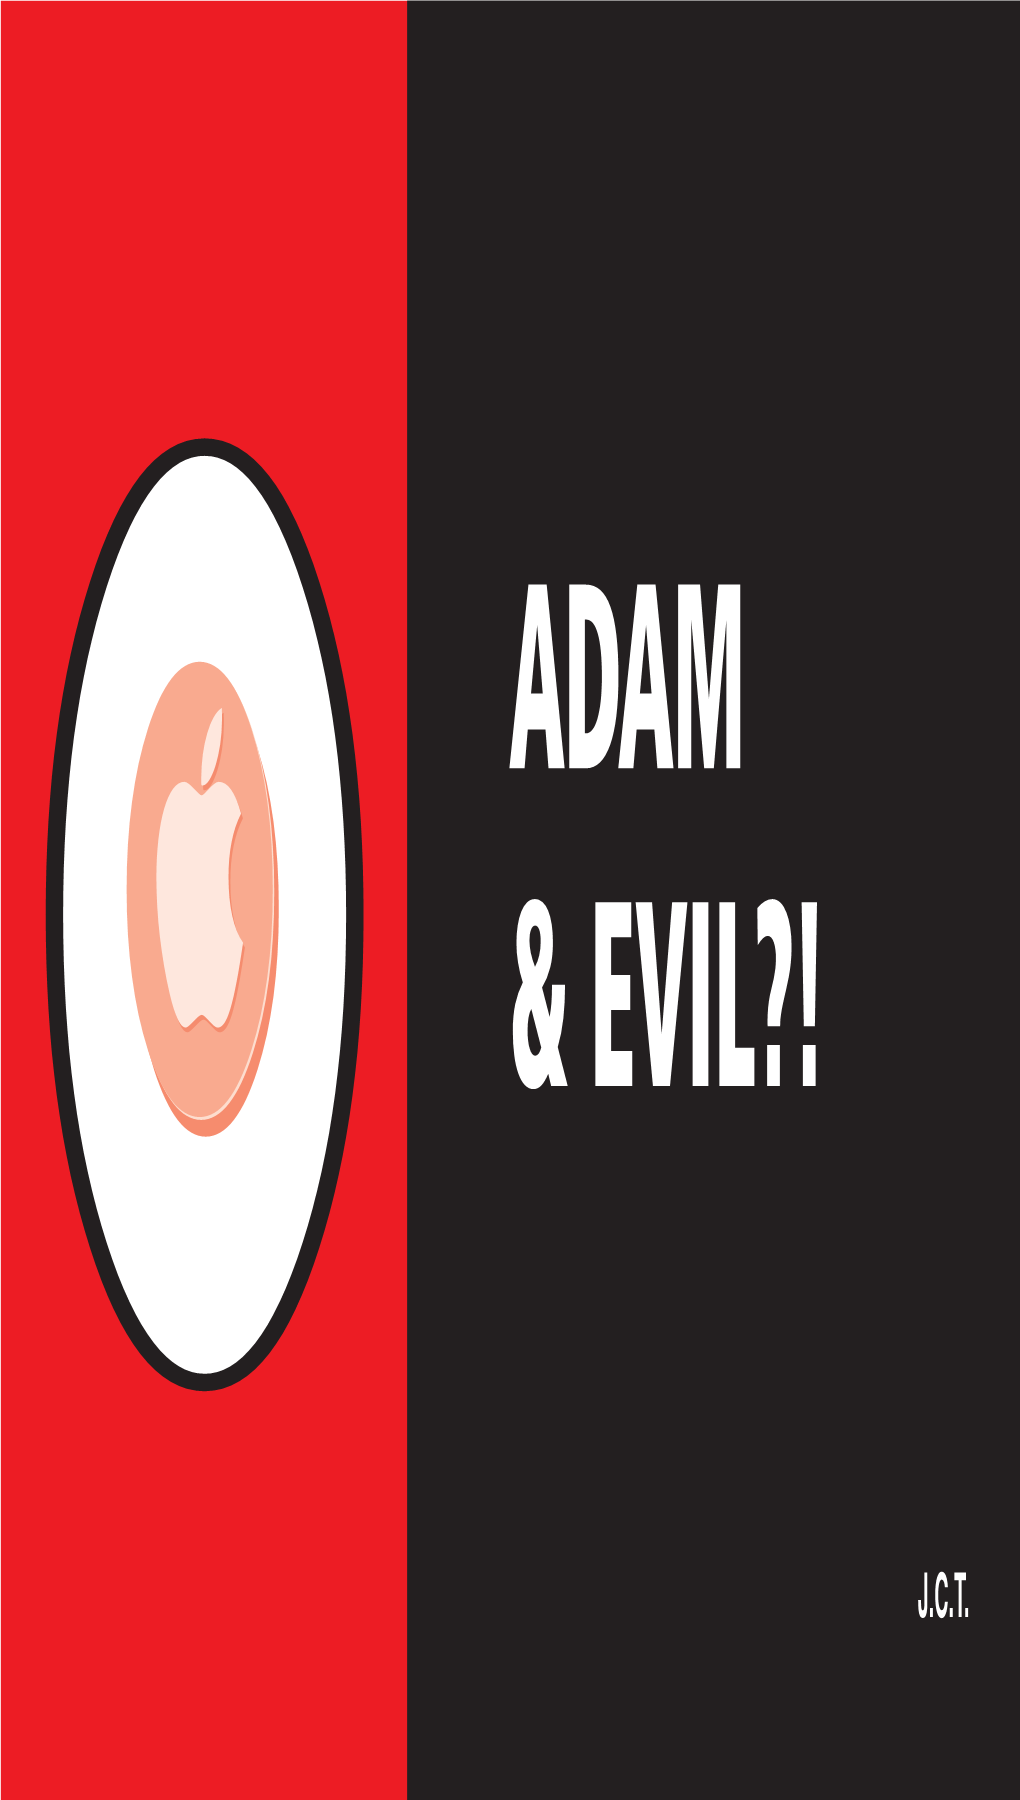 ADAM Or EVIL?! For